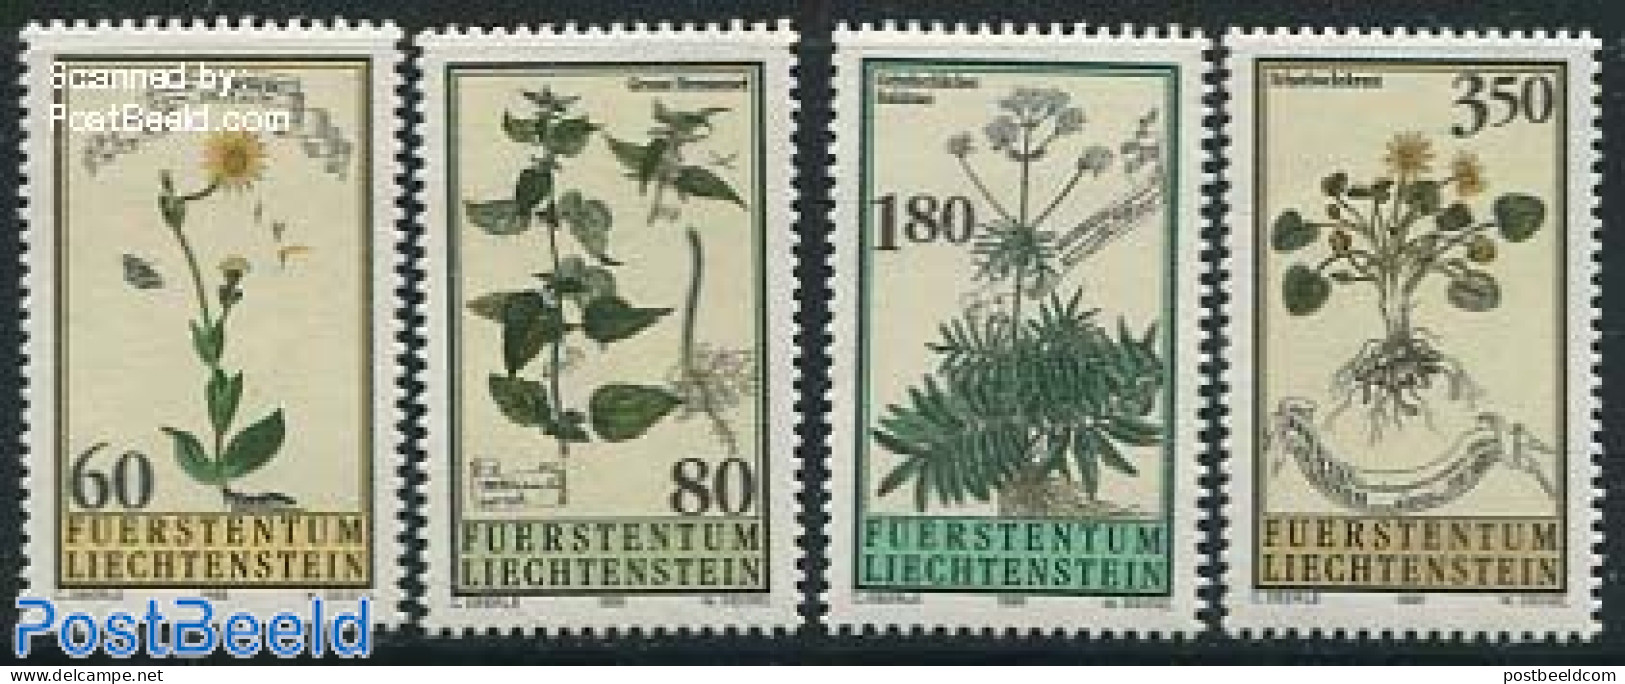 Liechtenstein 1995 Flowers 4v, Mint NH, Nature - Flowers & Plants - Ongebruikt